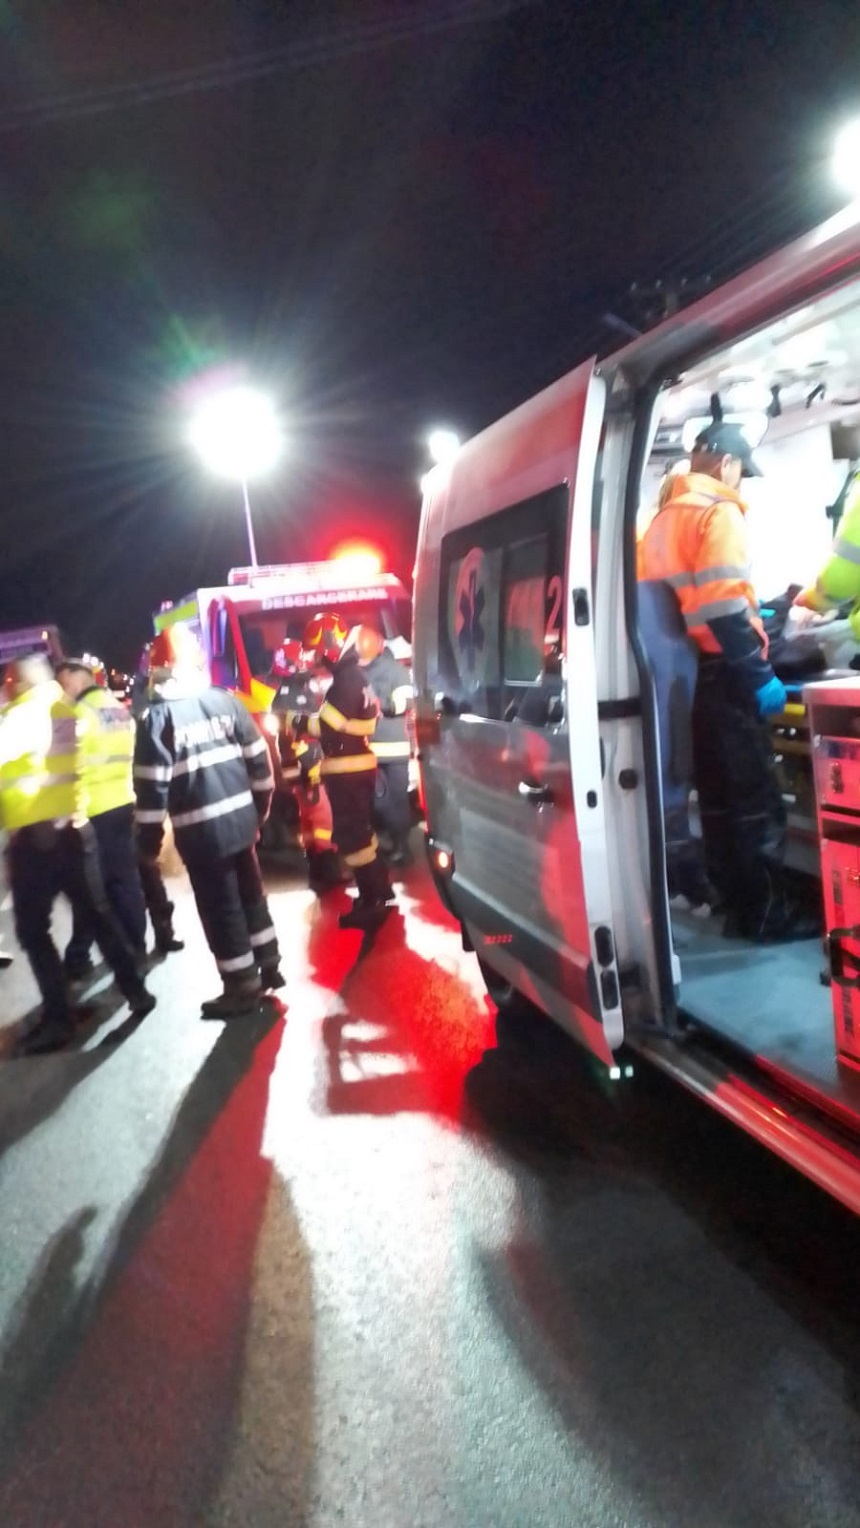 Vâlcea: Un adolescent de 16 ani a murit, iar alţi doi, de 13 şi 14 ani, sunt răniţi grav după ce maşina condusă de unul dintre ei a derapat şi s-a izbit violent de un cap de pod - FOTO, VIDEO
